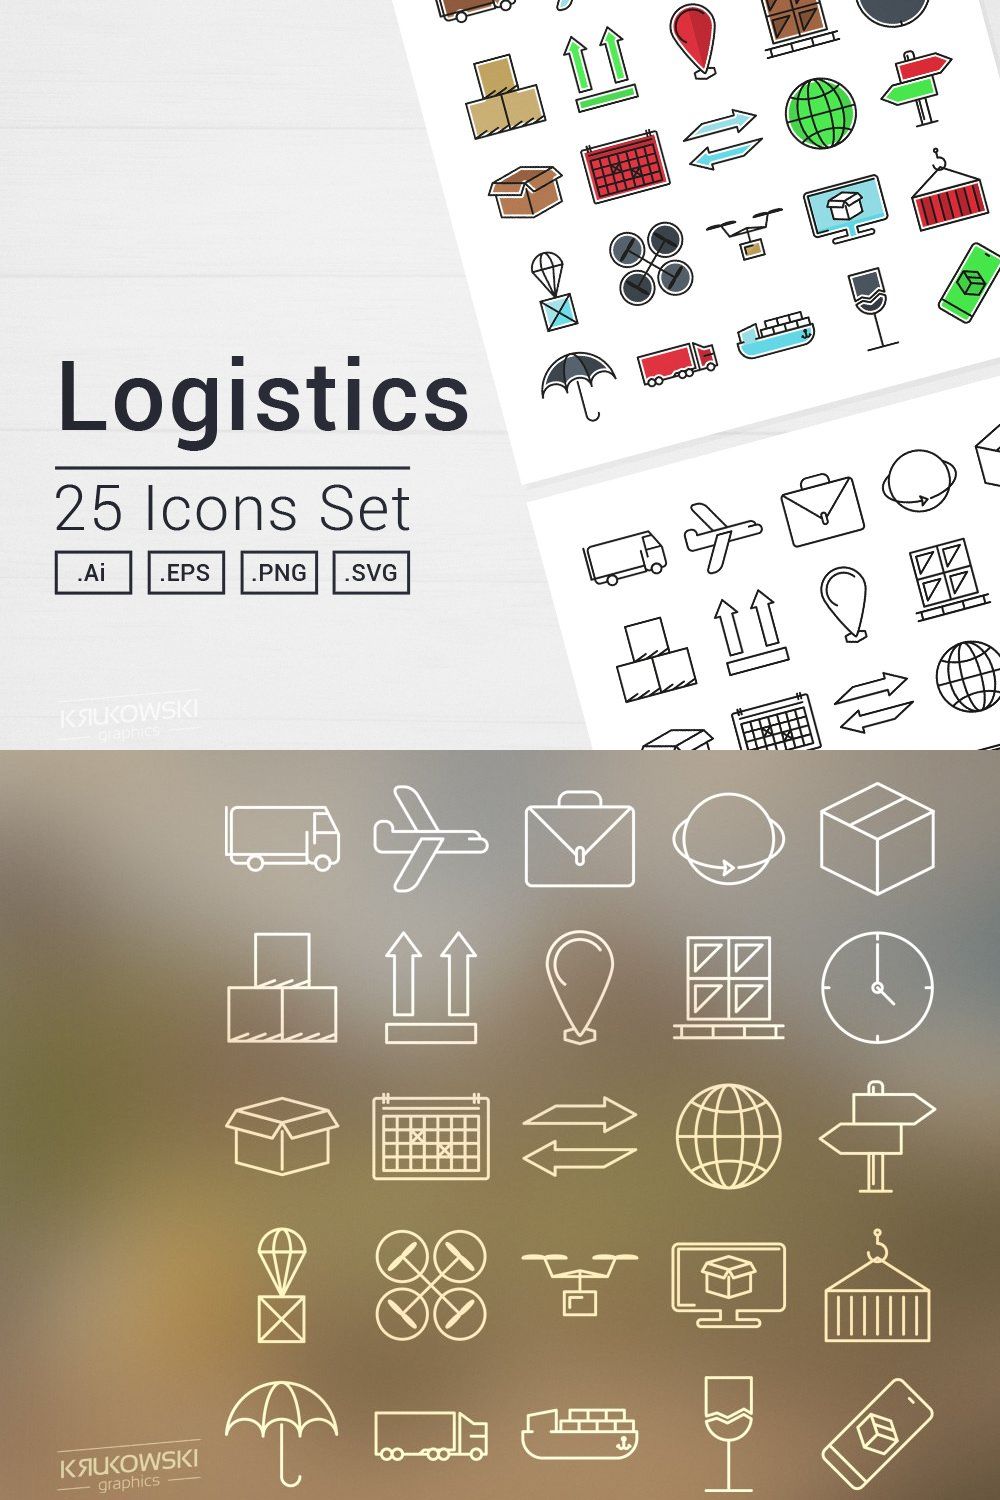 Logistics Icons Set pinterest preview image.